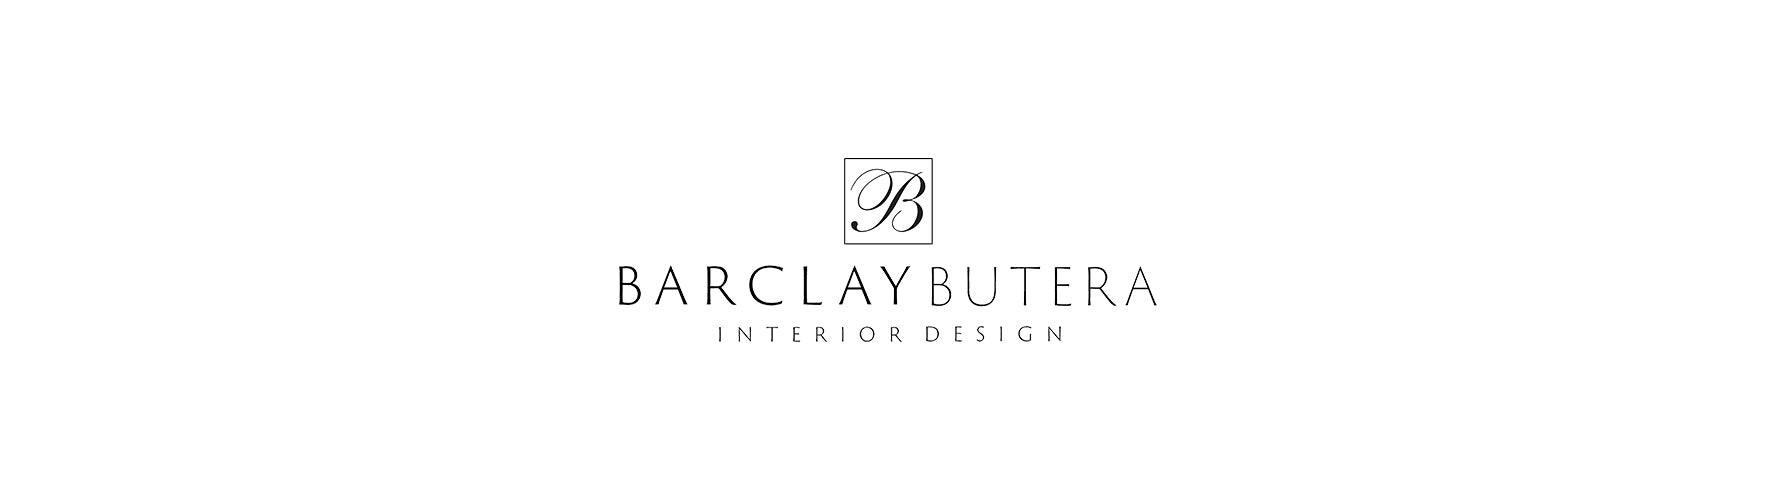 Barclay Butera Interior Design logo.